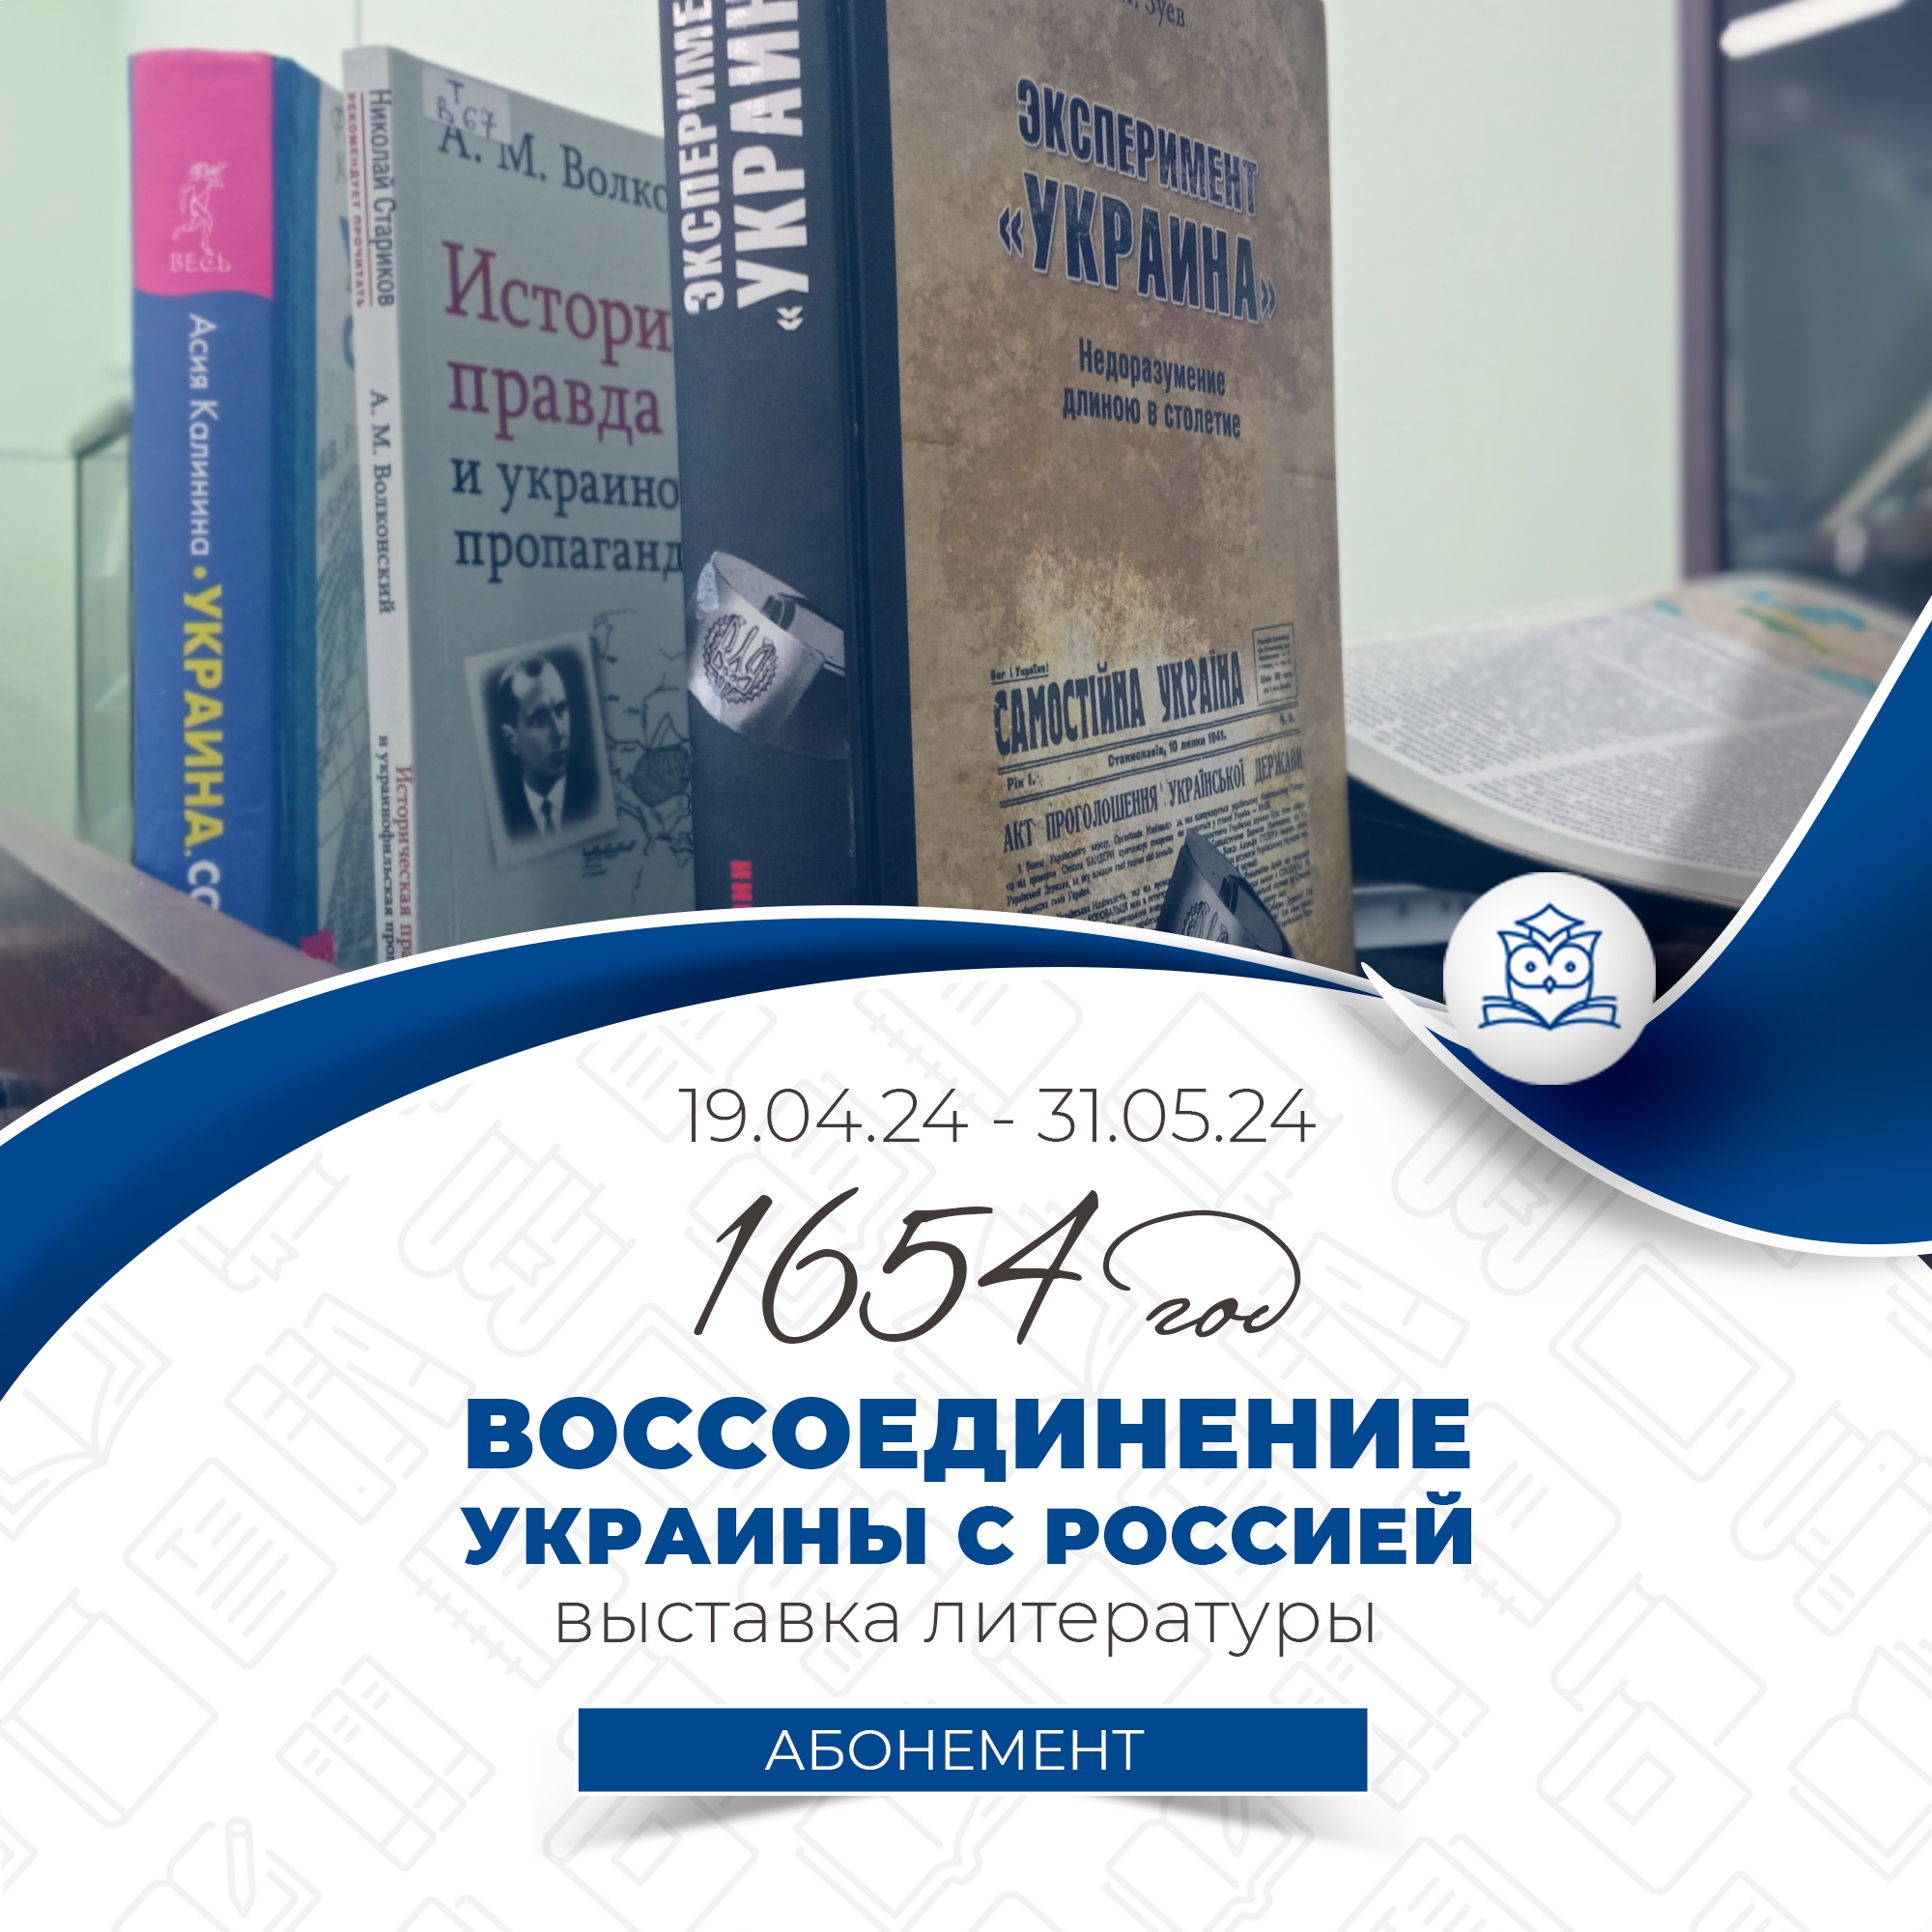 Абонемент научной литературы предлагает выставку литературы «1654 год. Воссоединение Украины с Россией». 